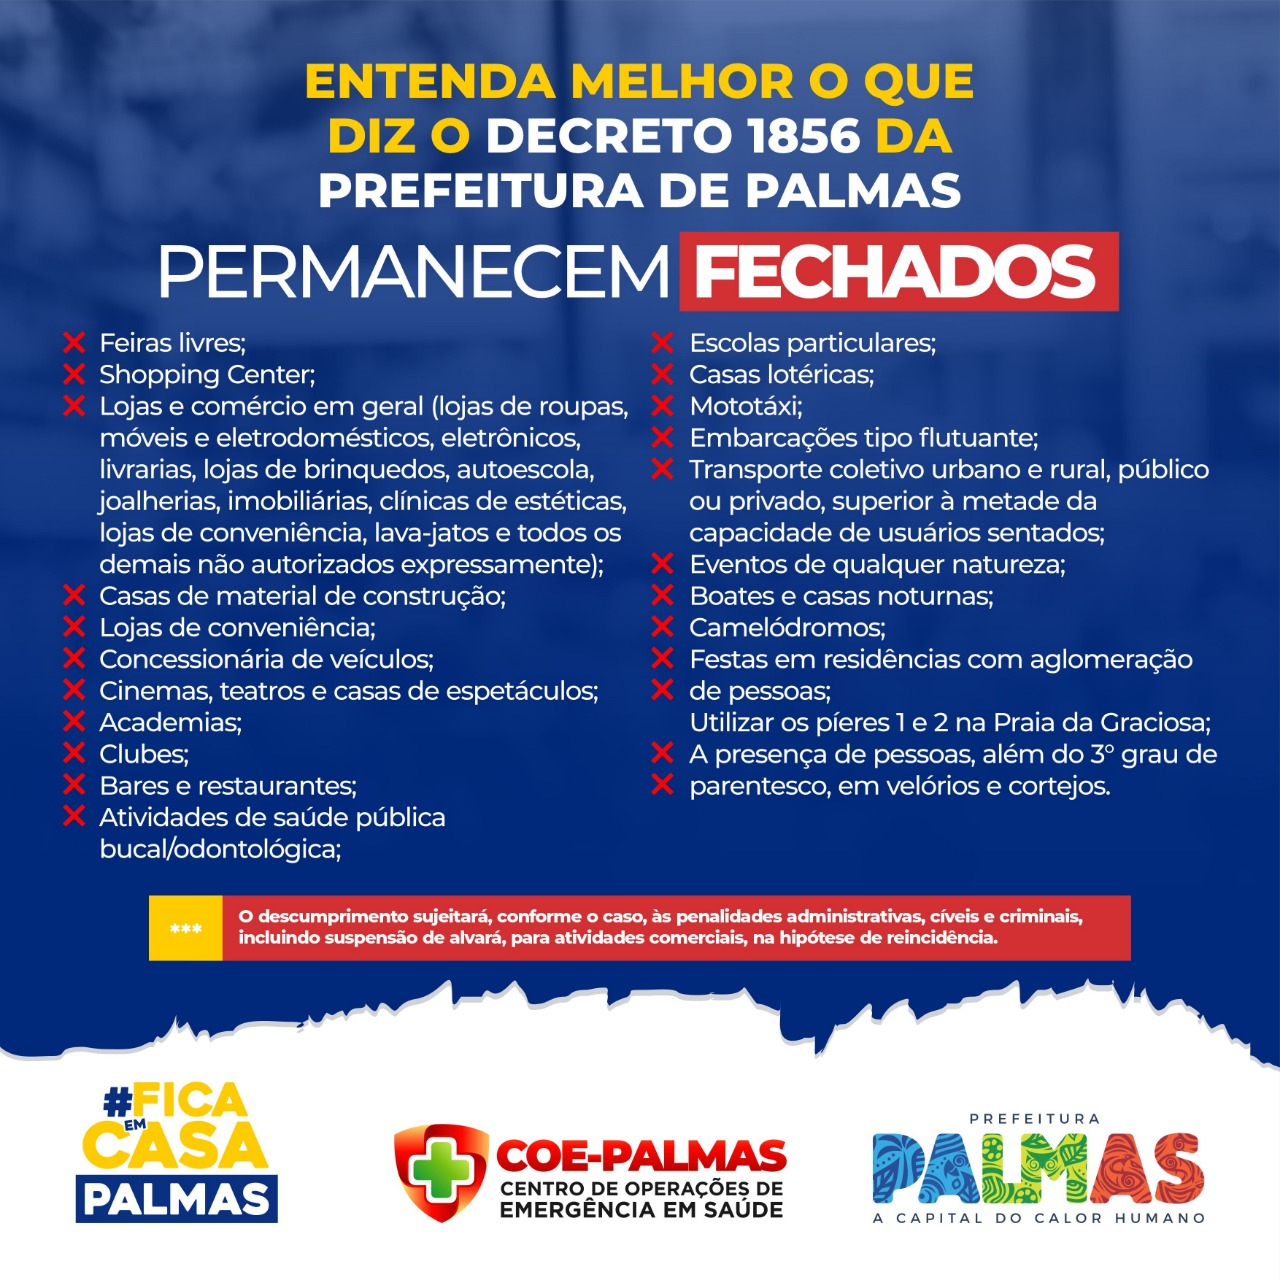 Confira a lista das 24 atividades que podem abrir e as 23 que não podem em Palmas durante a quarentena